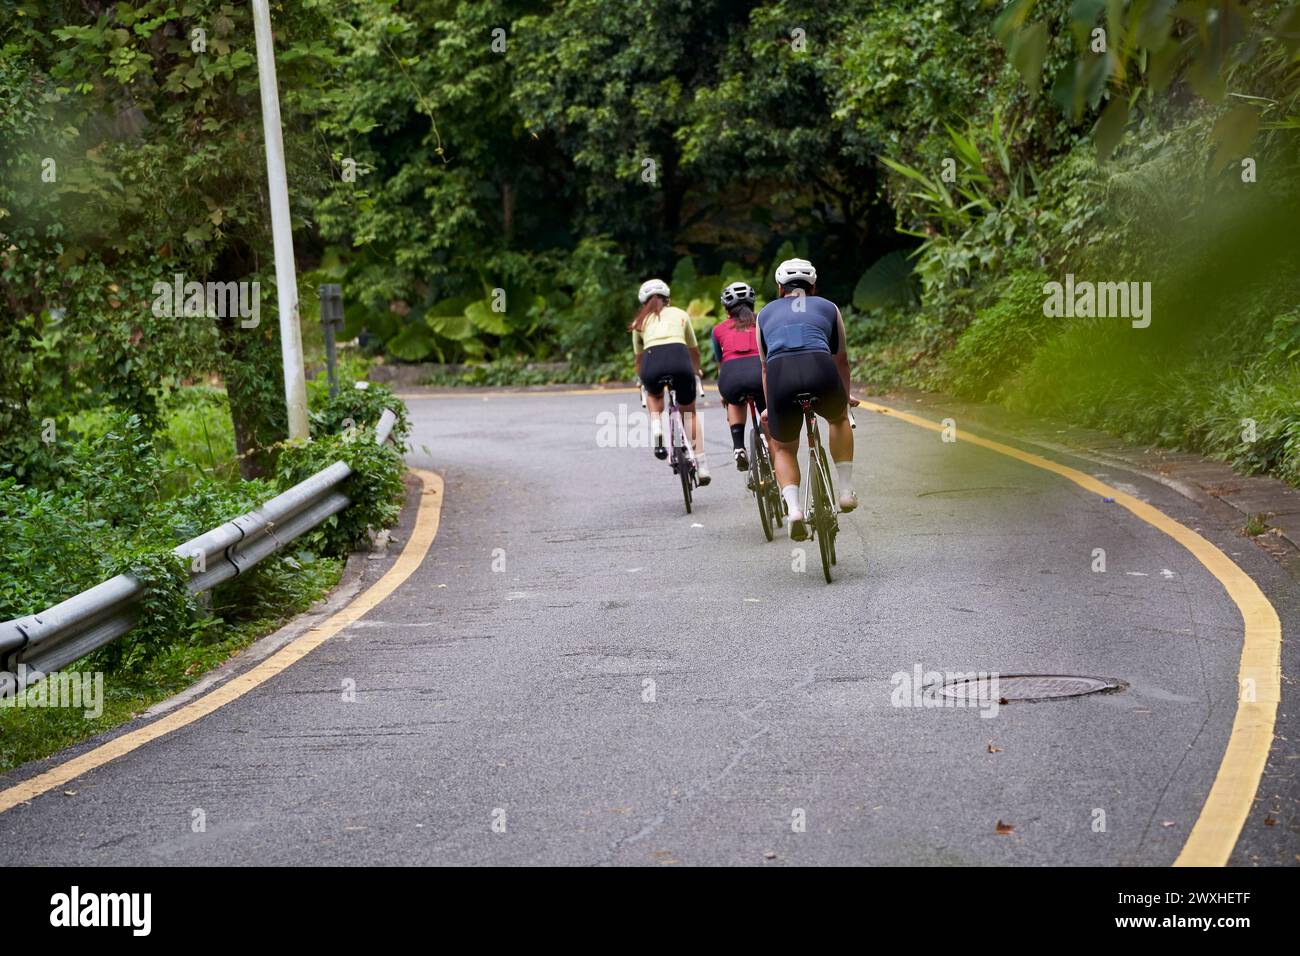 Rückansicht einer Gruppe von drei jungen asiatischen erwachsenen Radfahrern, die im Freien auf der Landstraße Fahrrad fahren Stockfoto